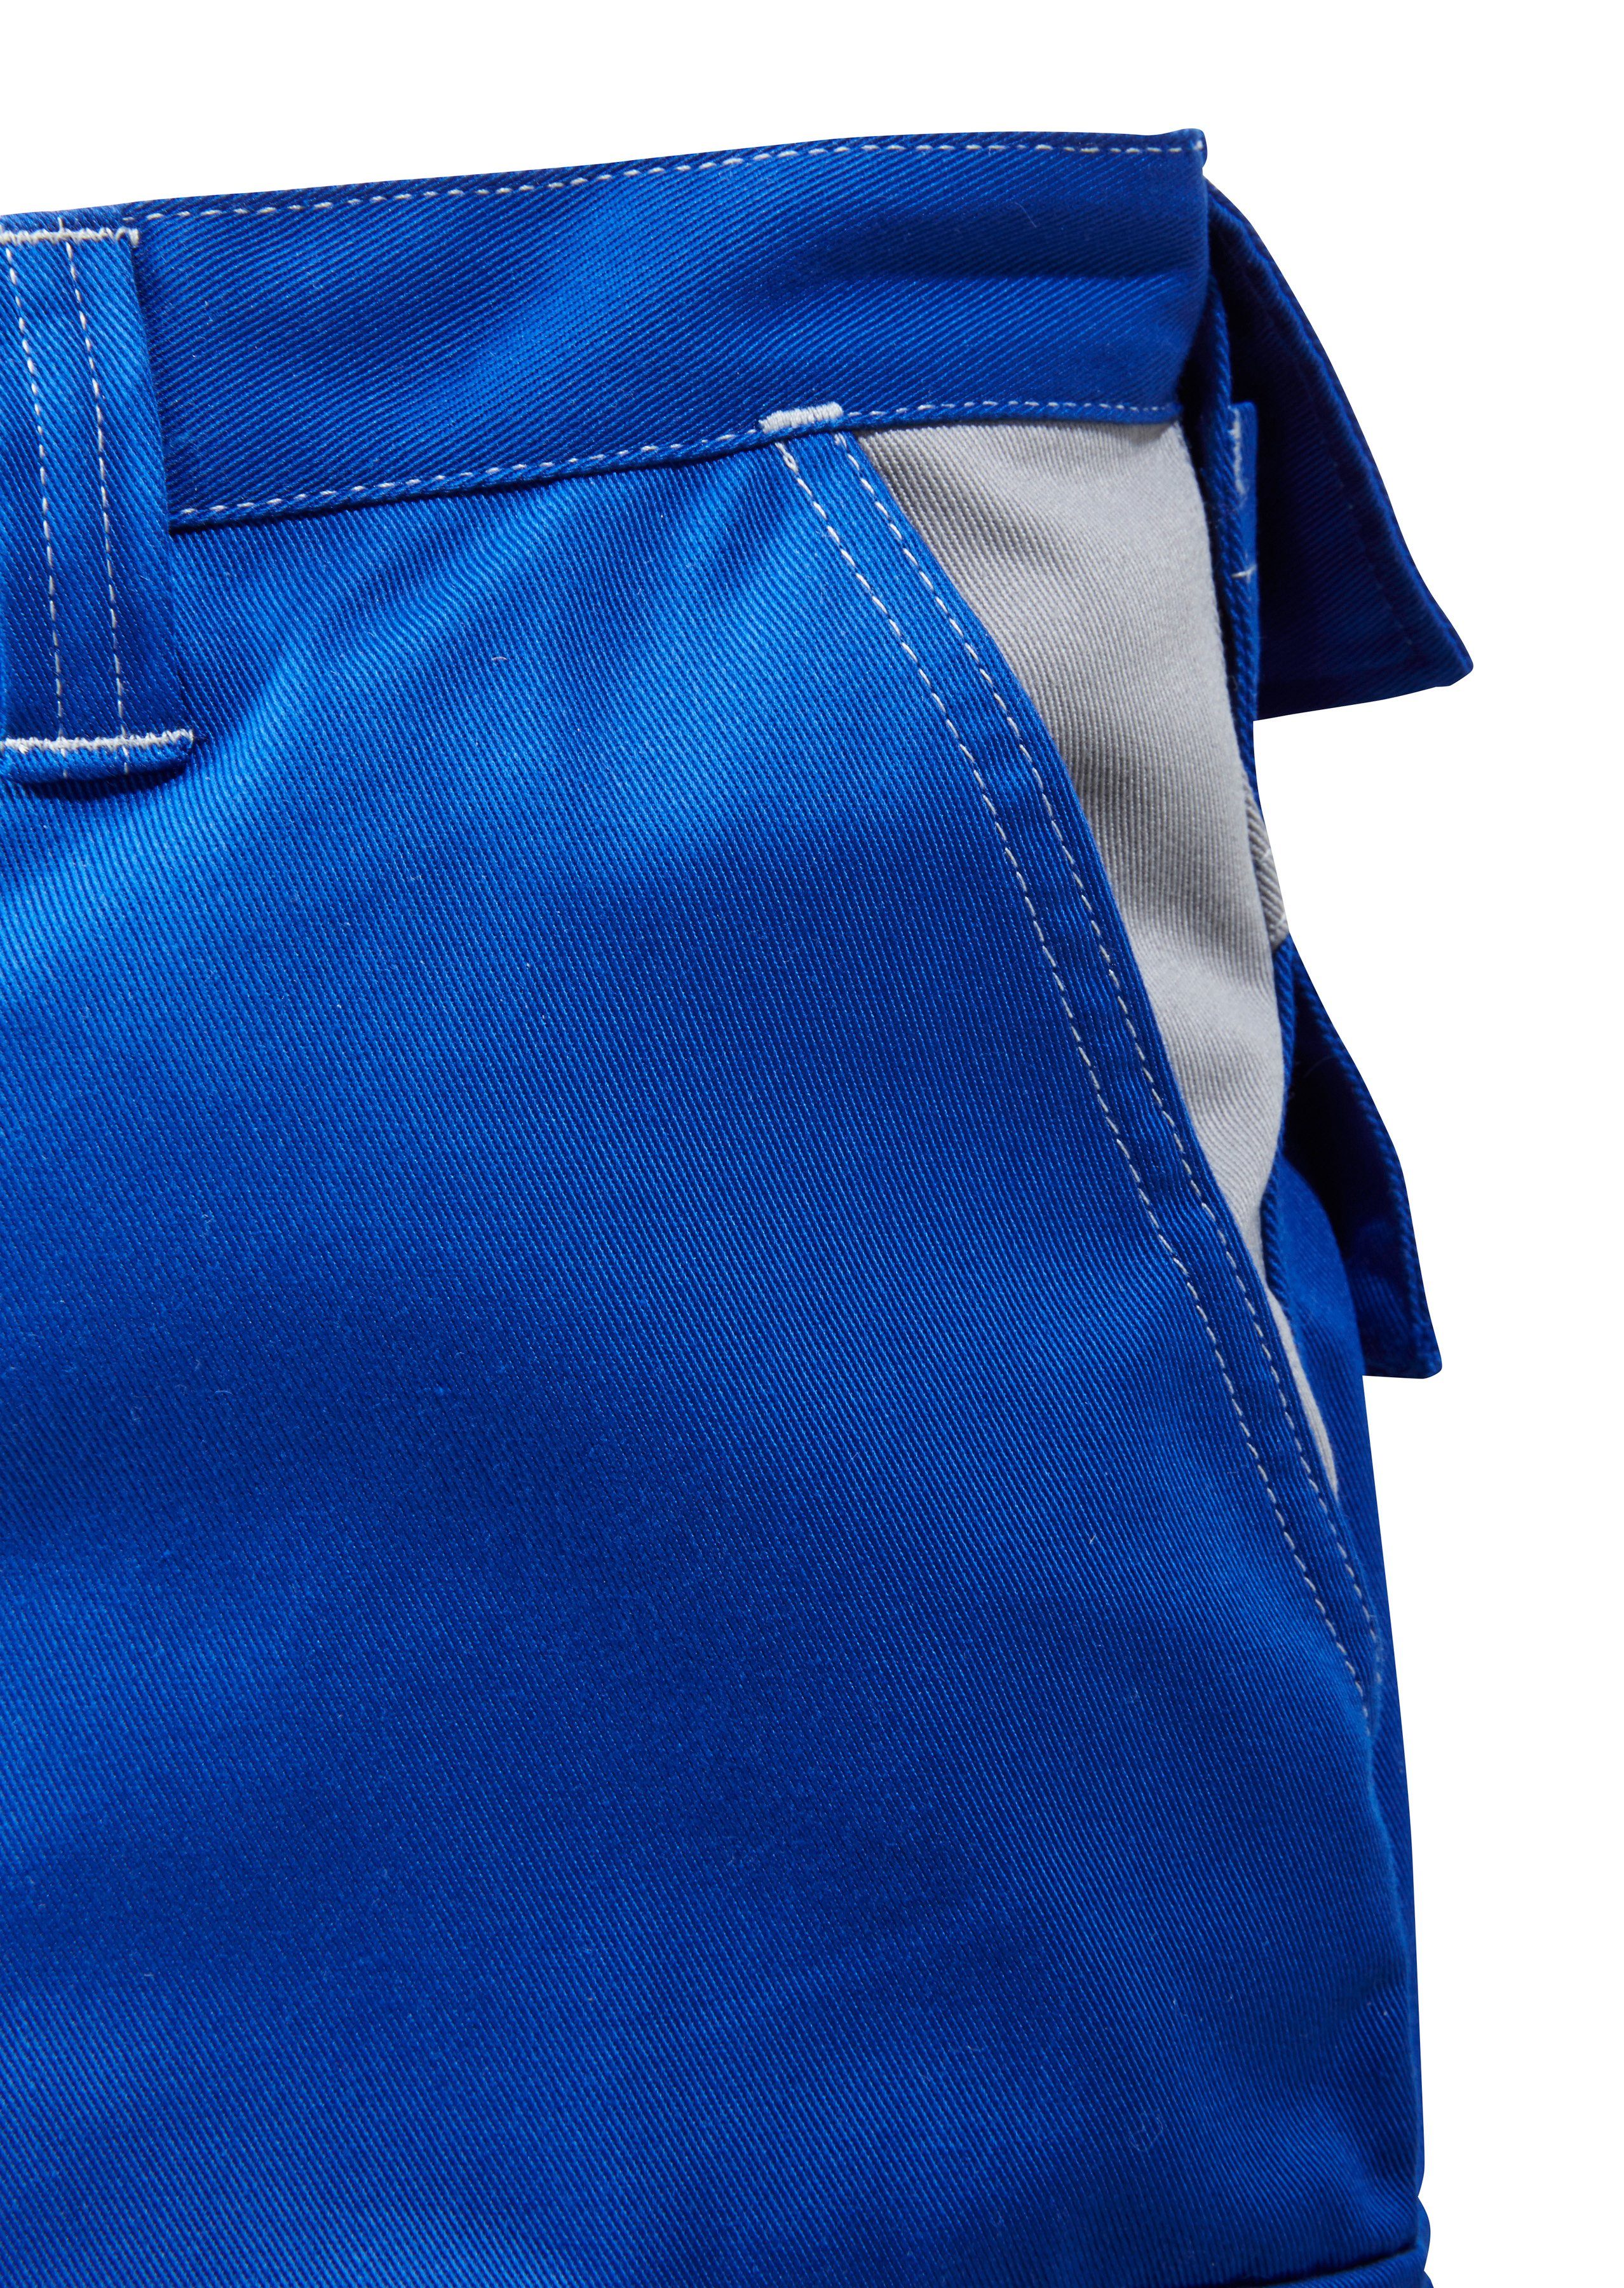 Kübler Arbeitshose Kniepolstertaschen mit blau-grau